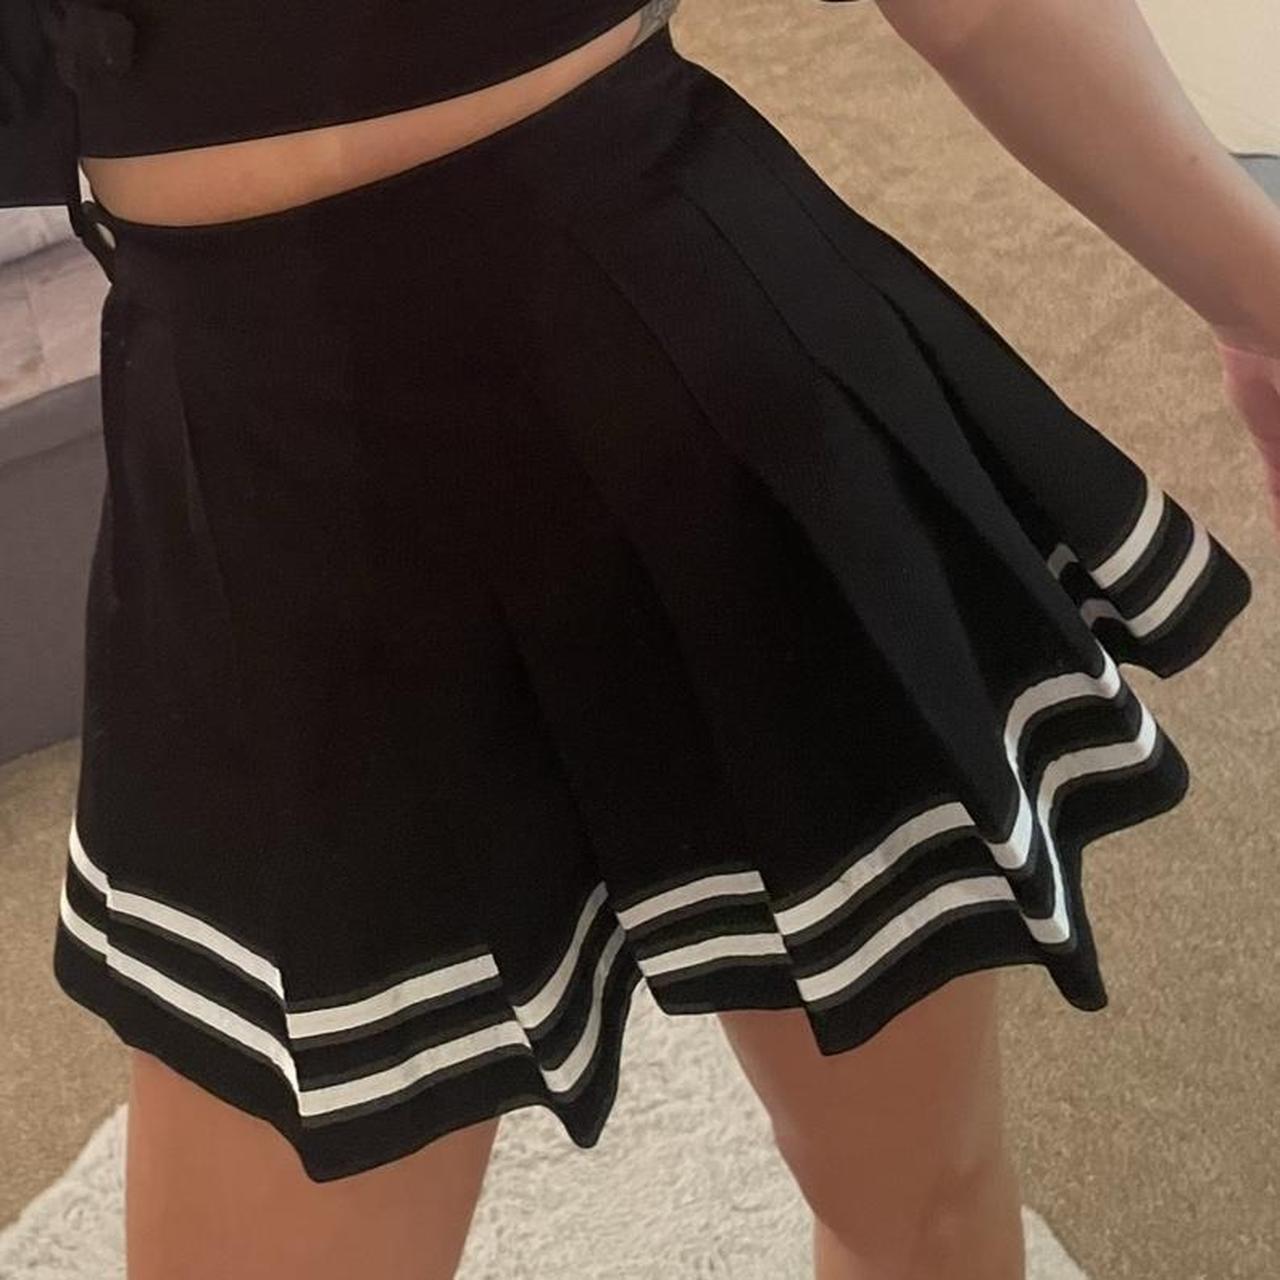 H&M black skirt with white detailed edge - Depop